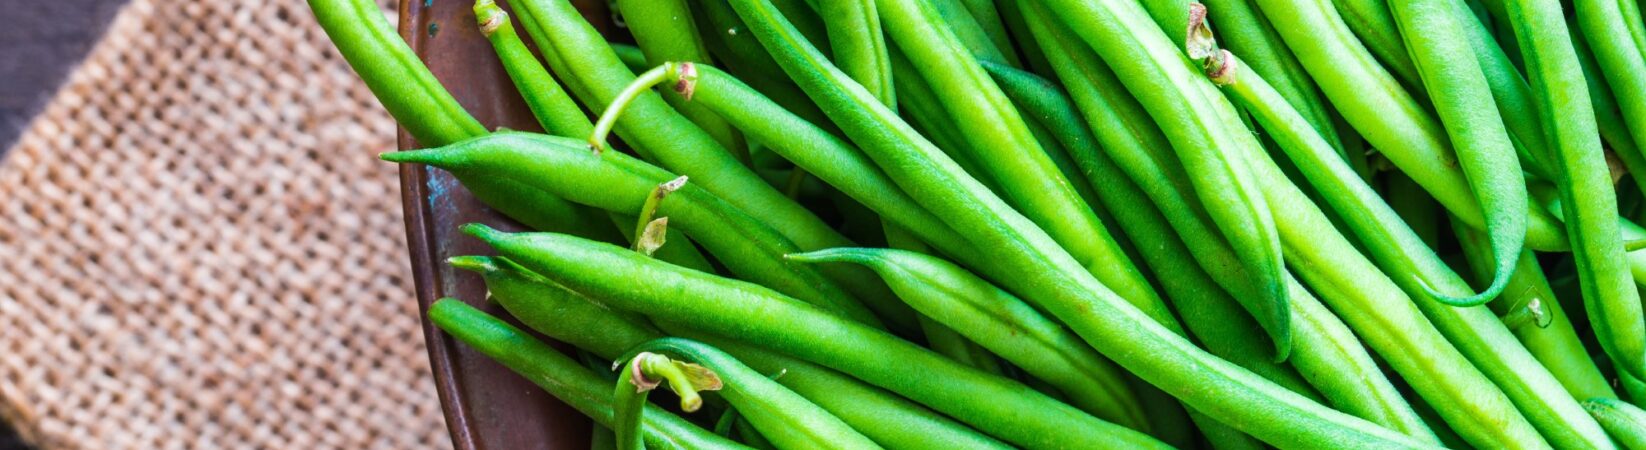 Grüne Bohnen – Besonders gut für die Herzgesundheit